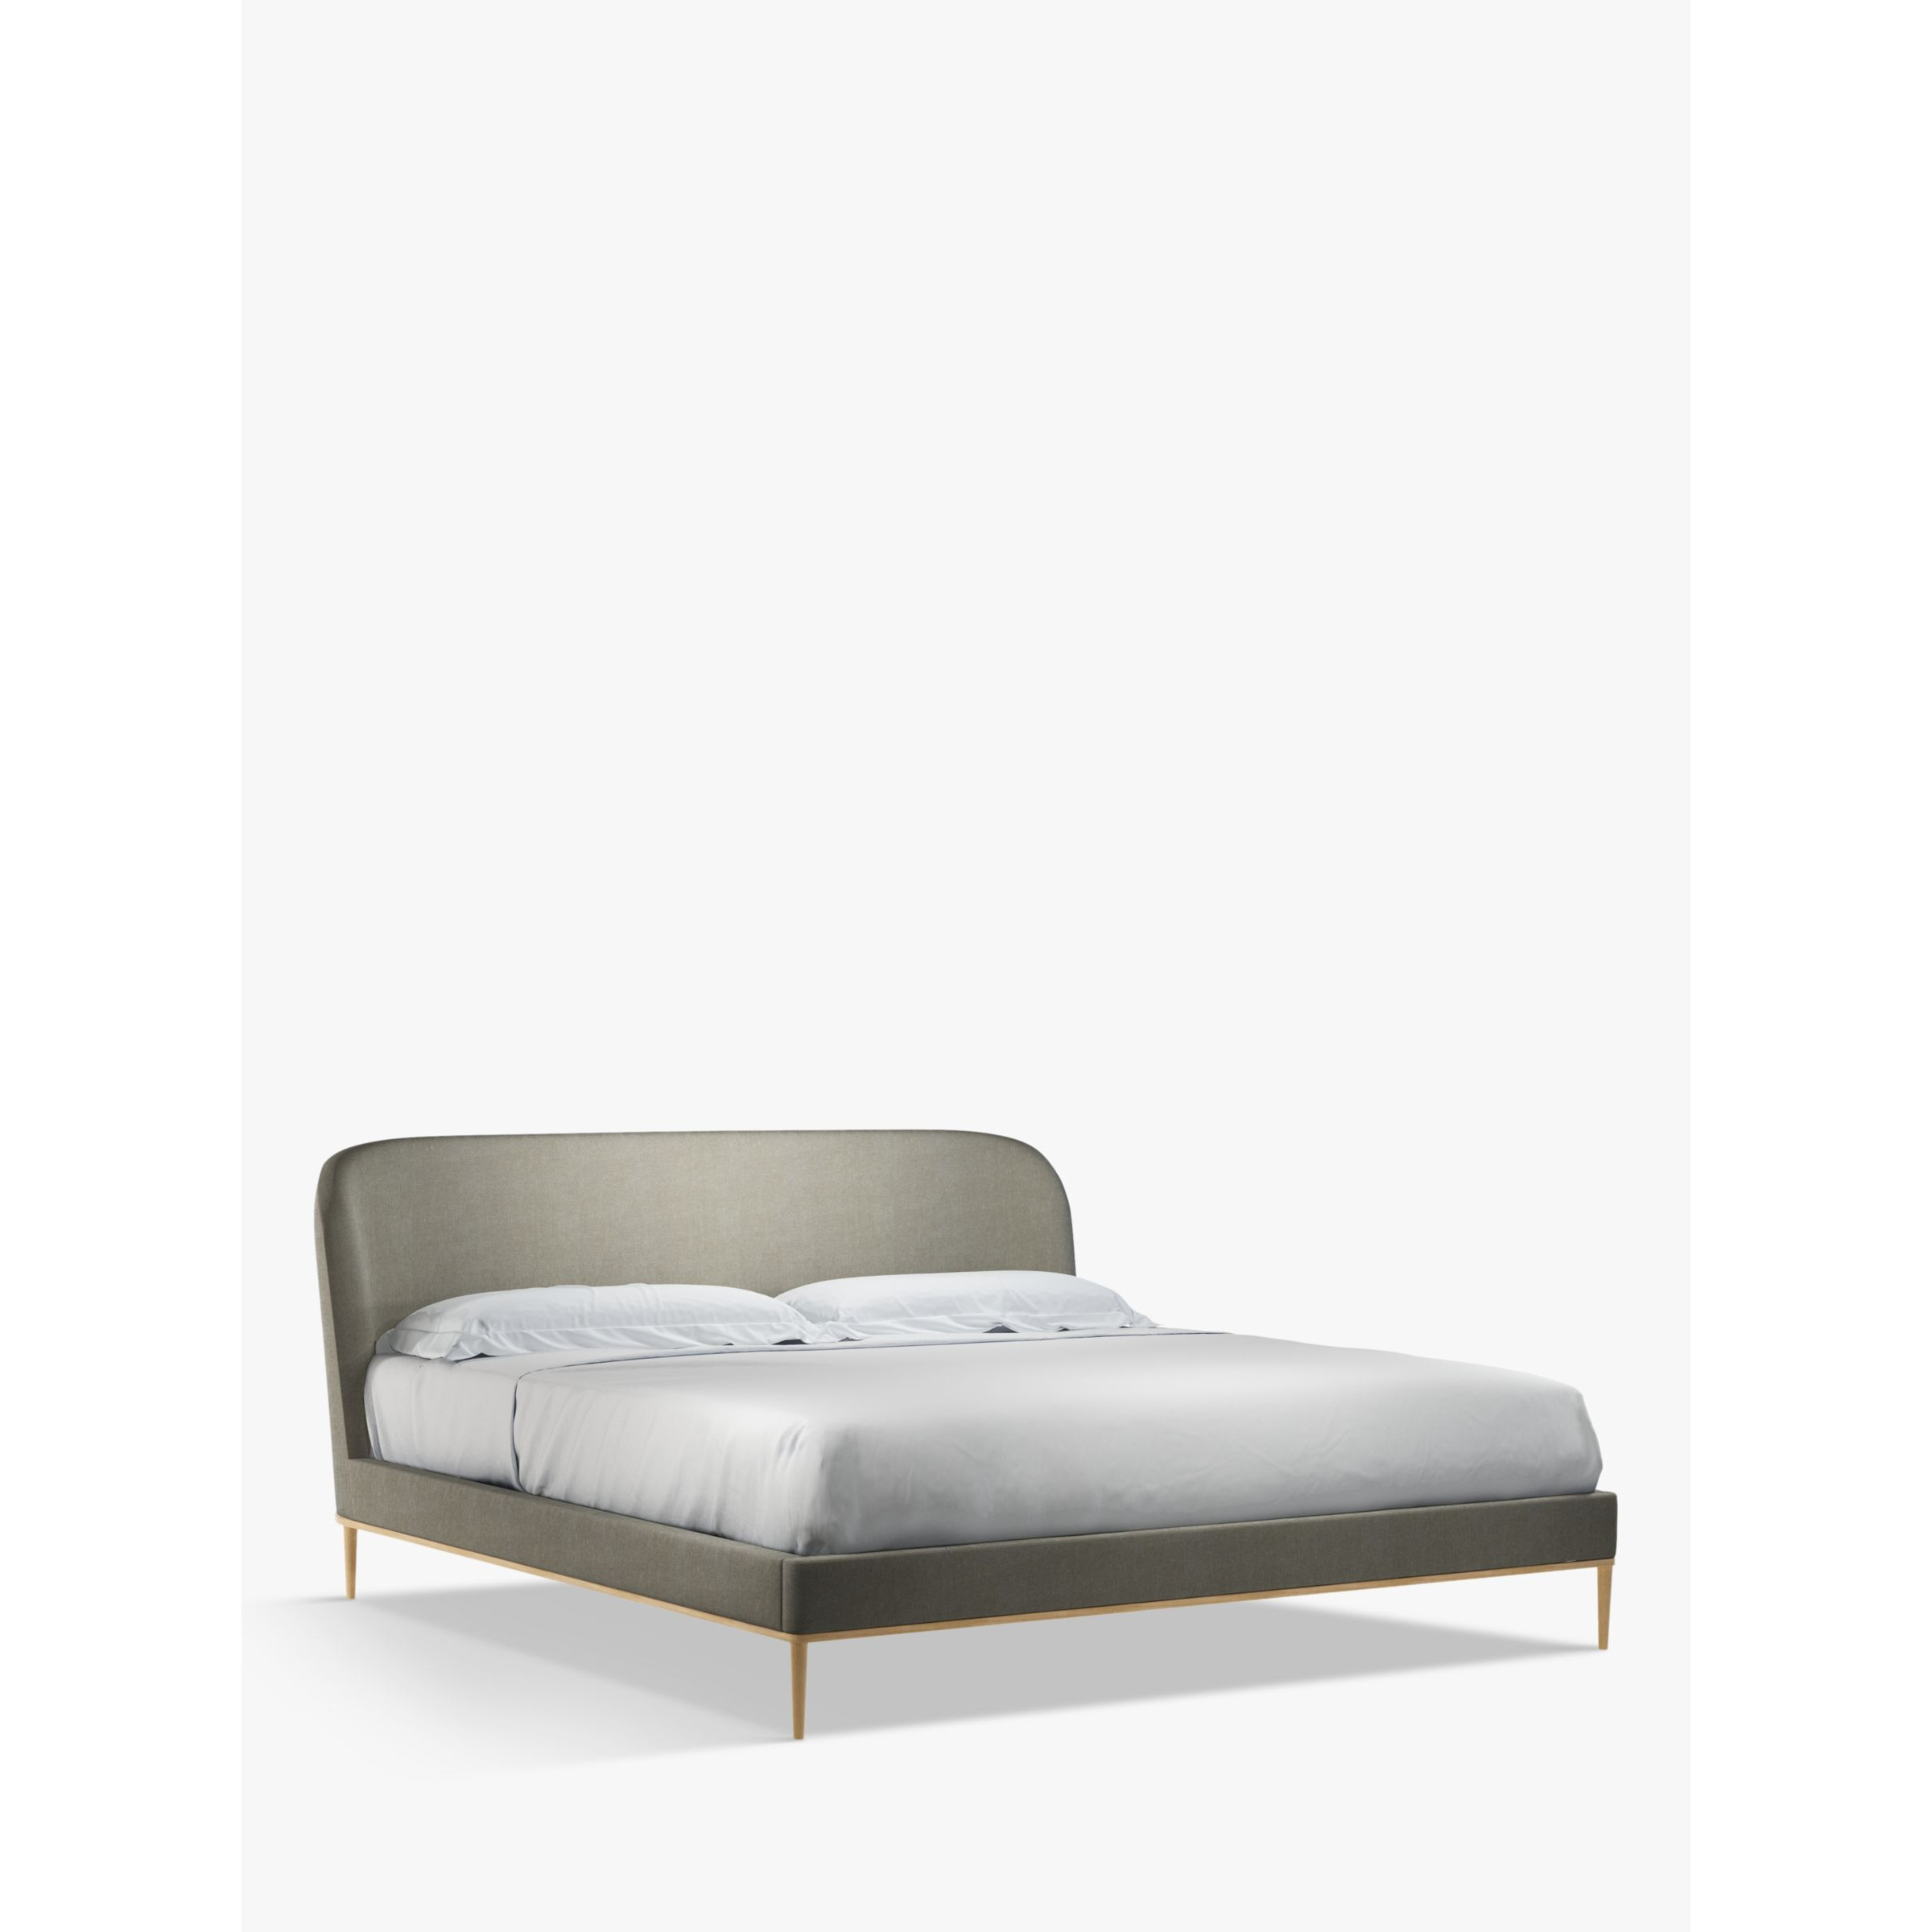 John Lewis Show-Wood Upholstered Bed Frame, Super King Size - image 1